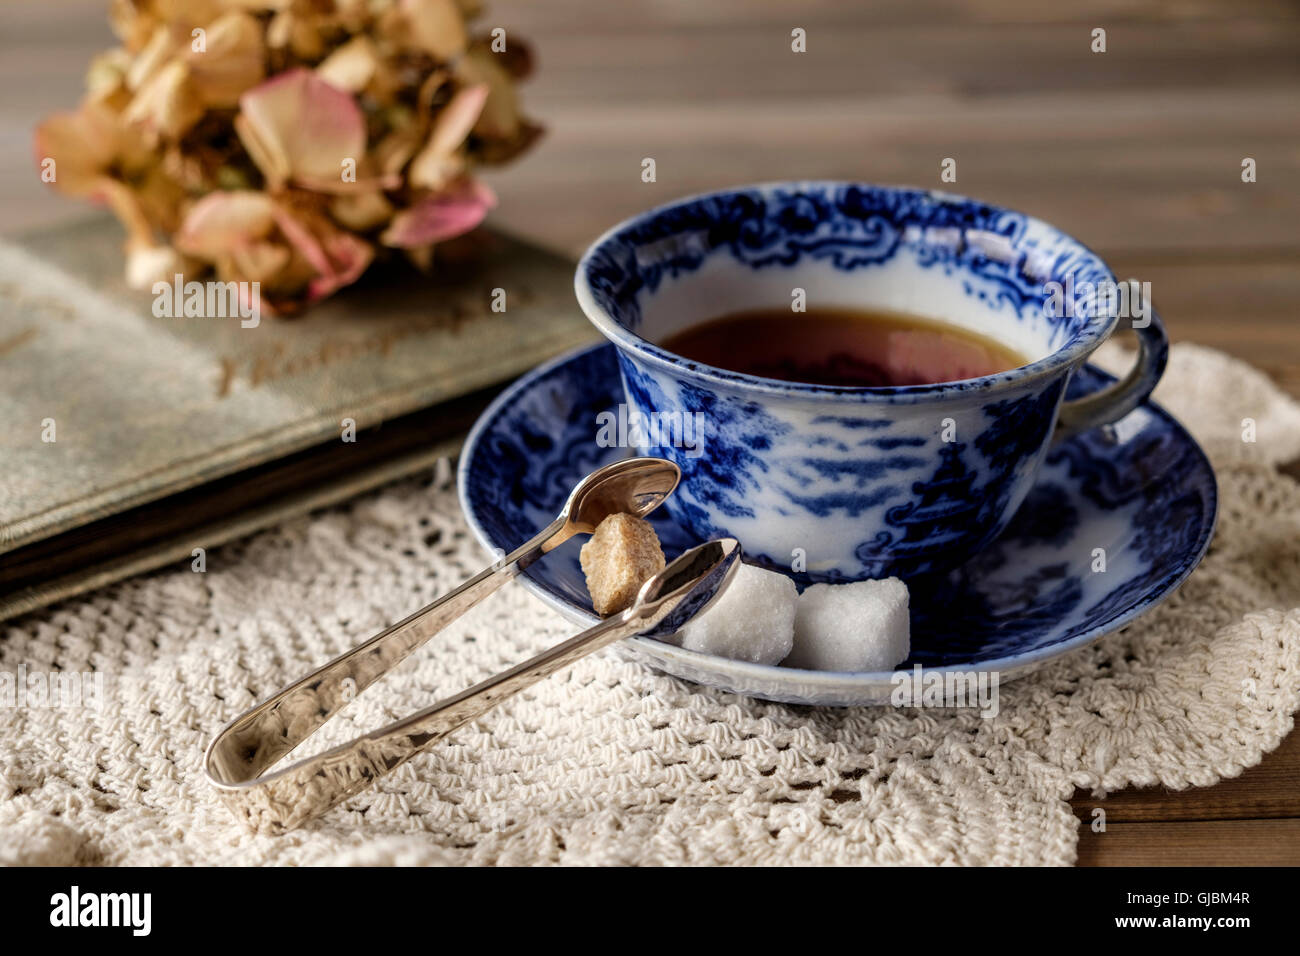 Nahaufnahme der Antike China-blauen und weißen Tasse und Untertasse mit Tee auf Lace-Tuch auf Holztisch mit aus Fokus verblasst Blume Stockfoto